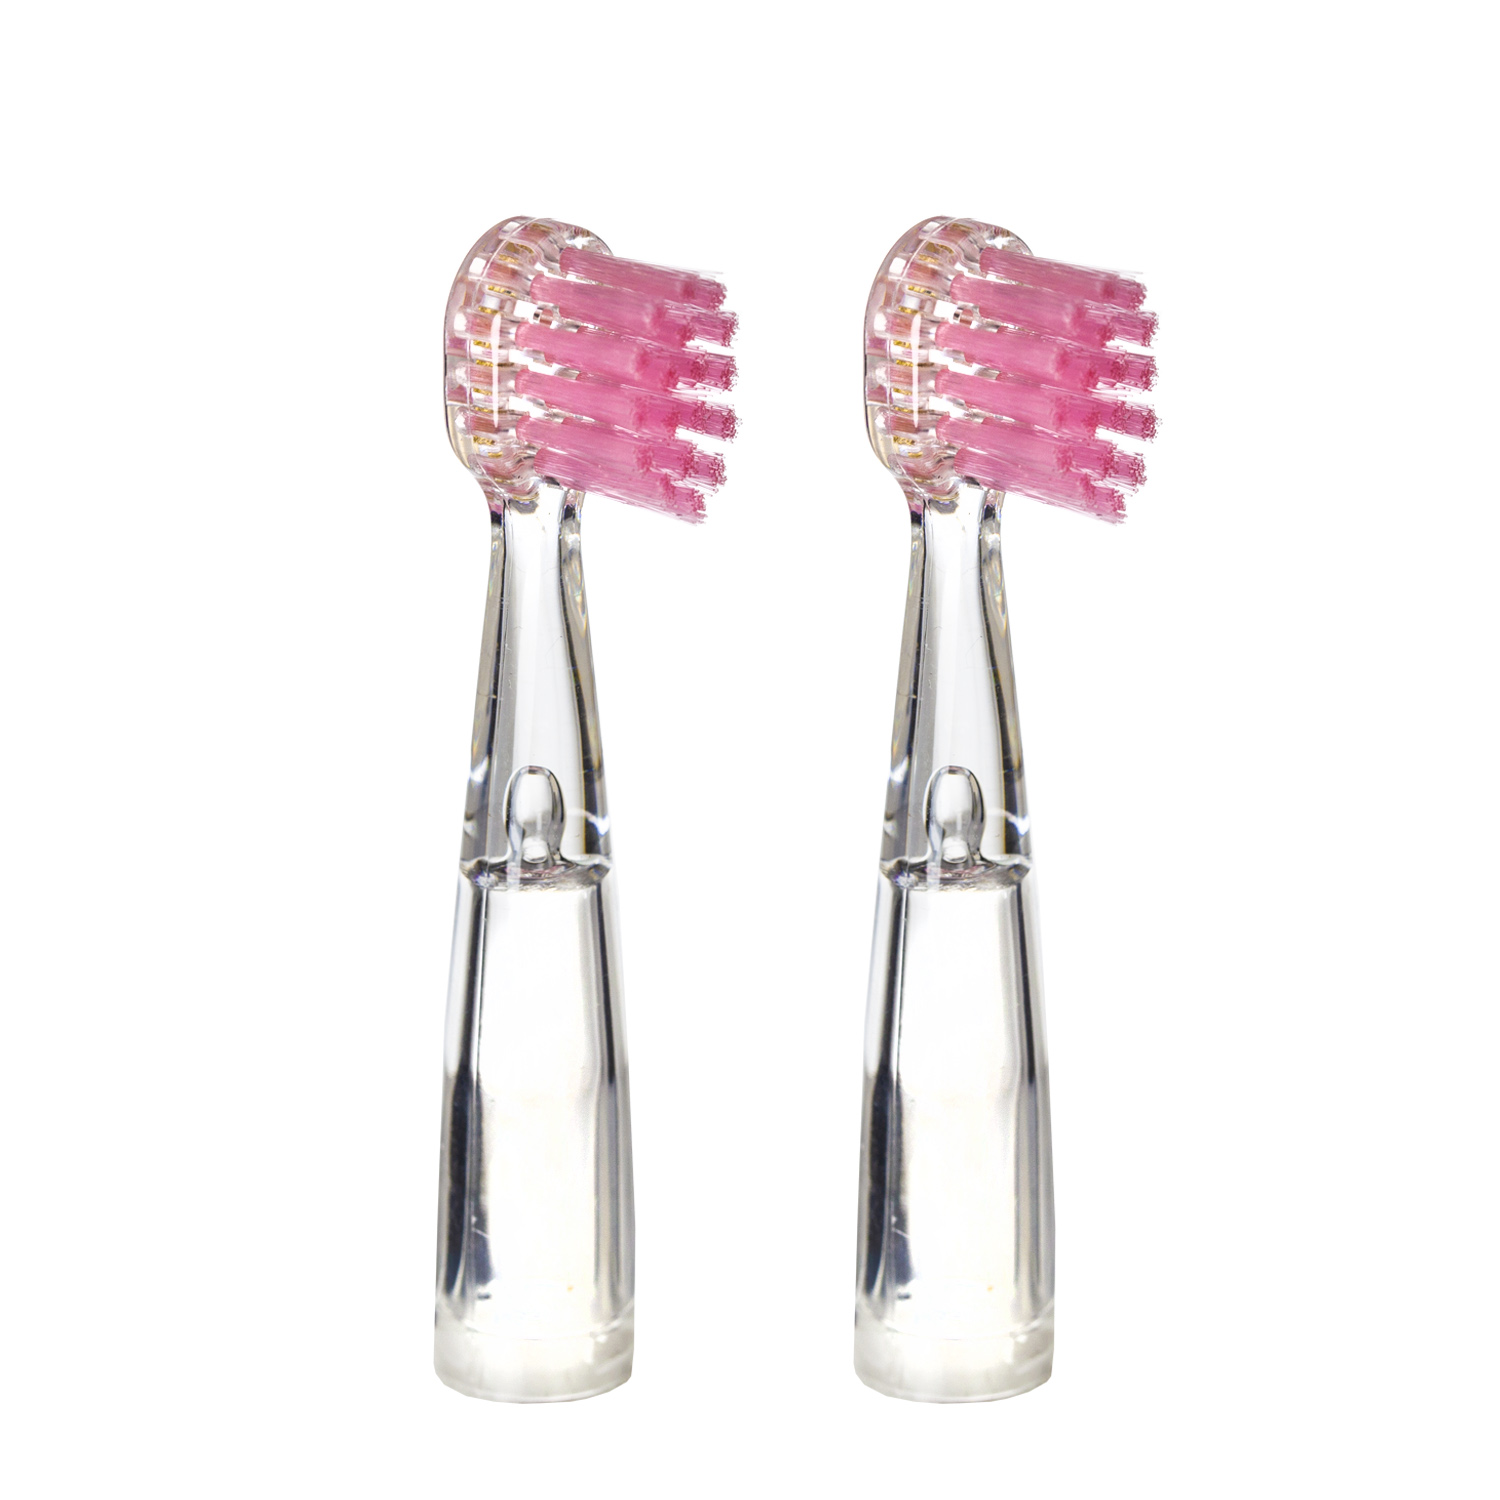 Насадка для детской электрической зубной щетки Revyline RL 025, розовая, 2 шт., 6171 насадки luazon lp 006 для электрической зубной щетки 4 шт в наборе